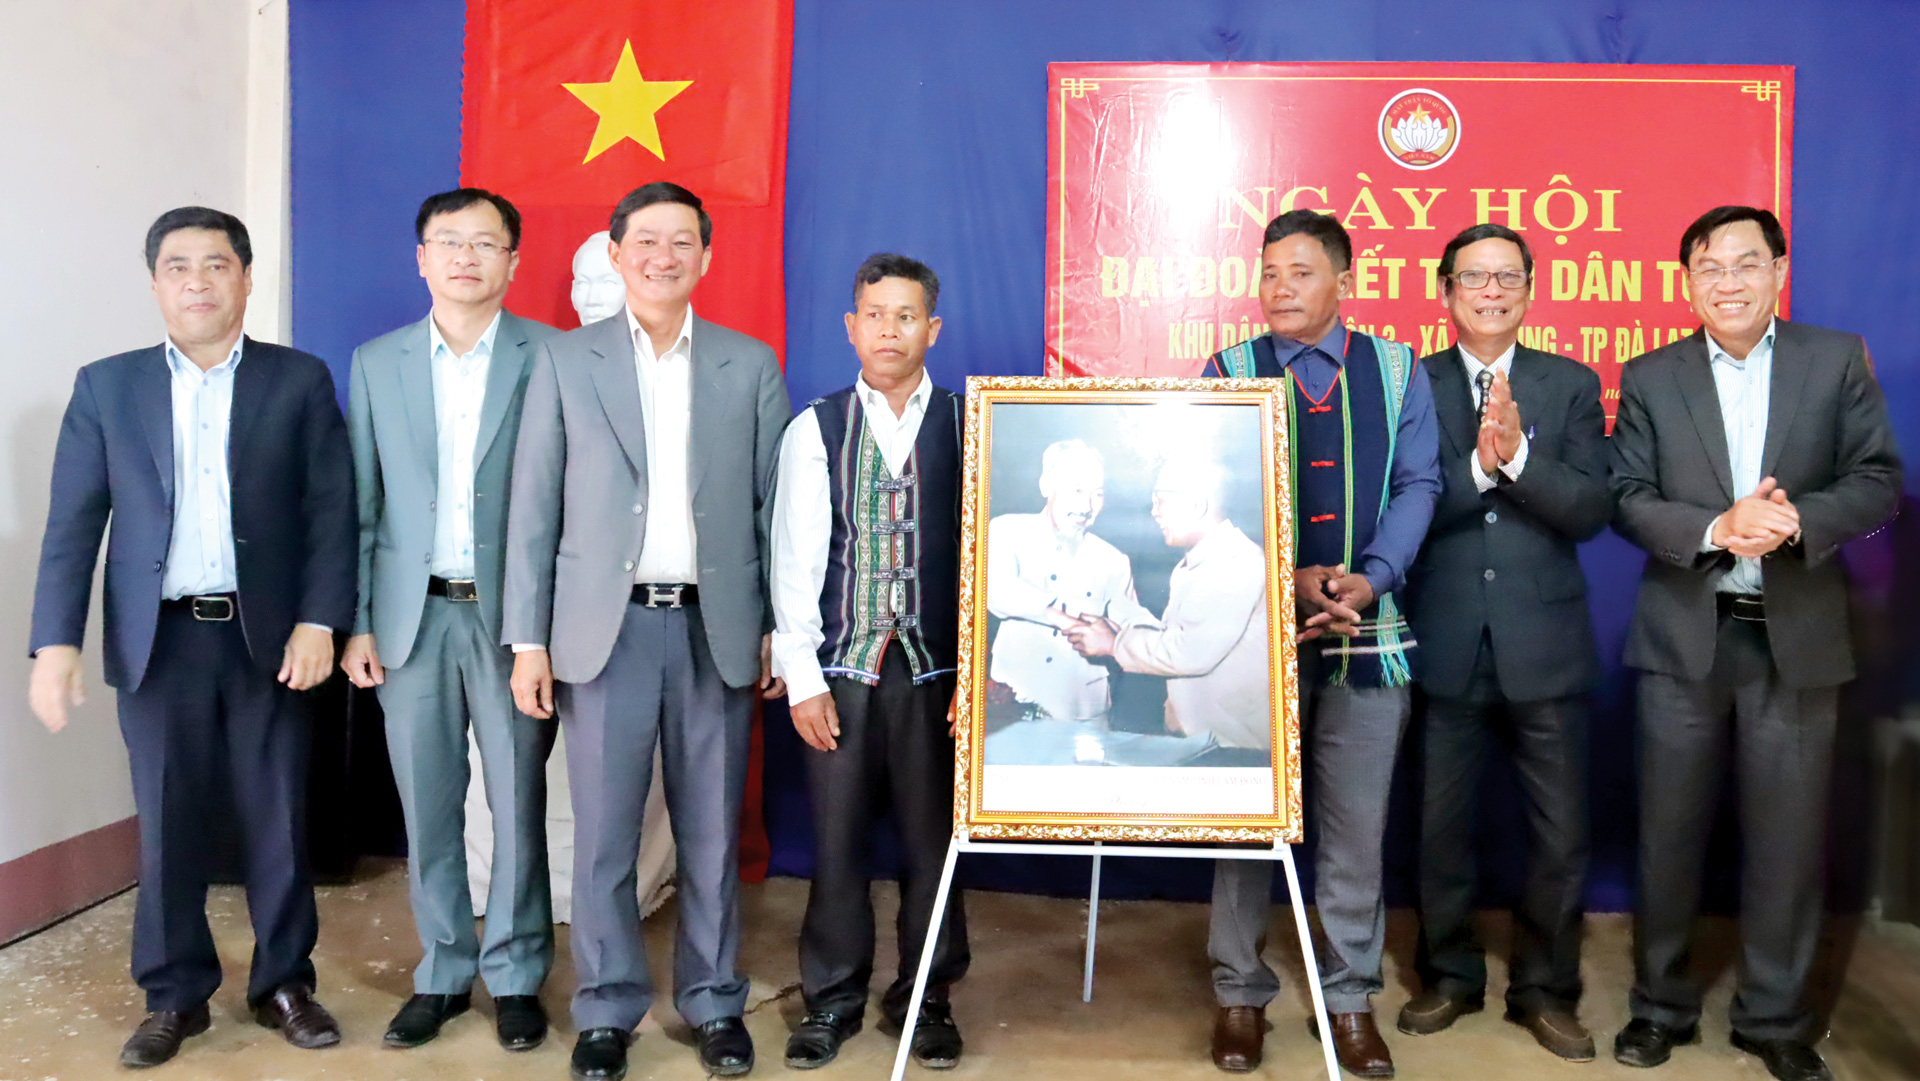 Lãnh đạo tỉnh tặng bức ảnh Bác Hồ - Bác Tôn cho tập thể cán bộ và Nhân dân khu dân cư nhằm khơi gợi,
phát huy tinh thần đại đoàn kết toàn dân tộc